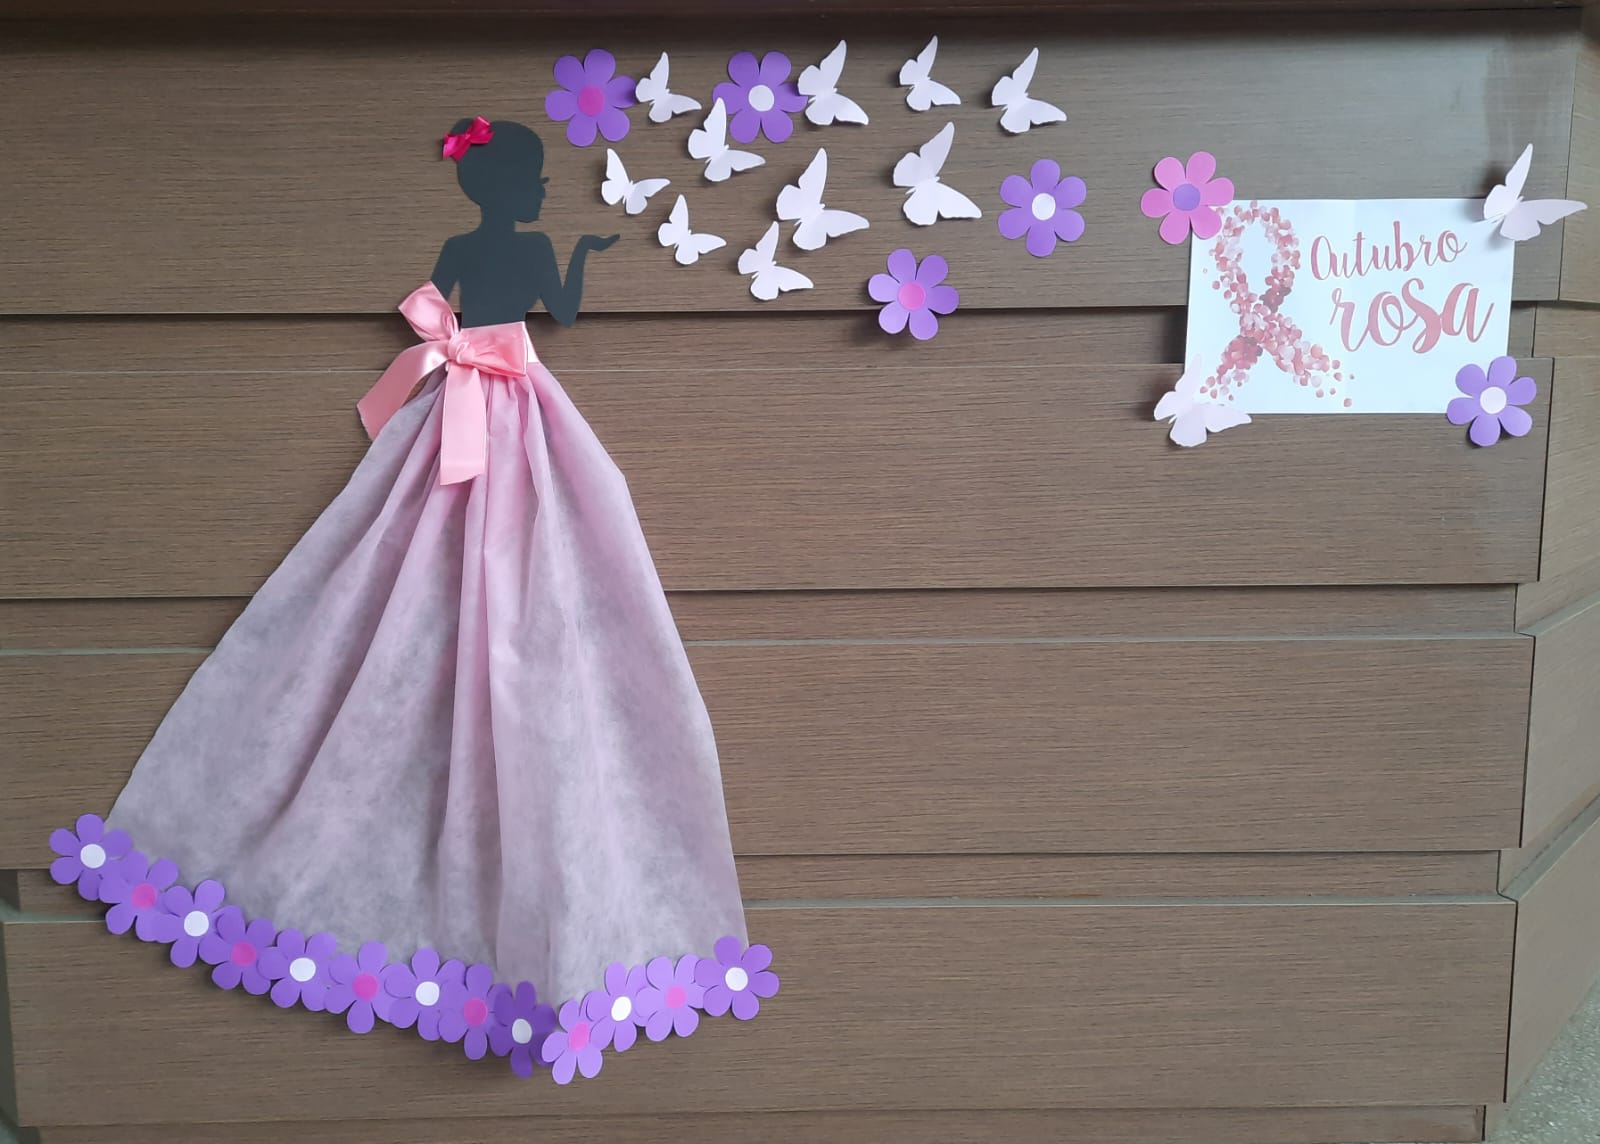 Imagem fundo marrom com uma moça de vestido rosa com flores na barra e borboletas voando.